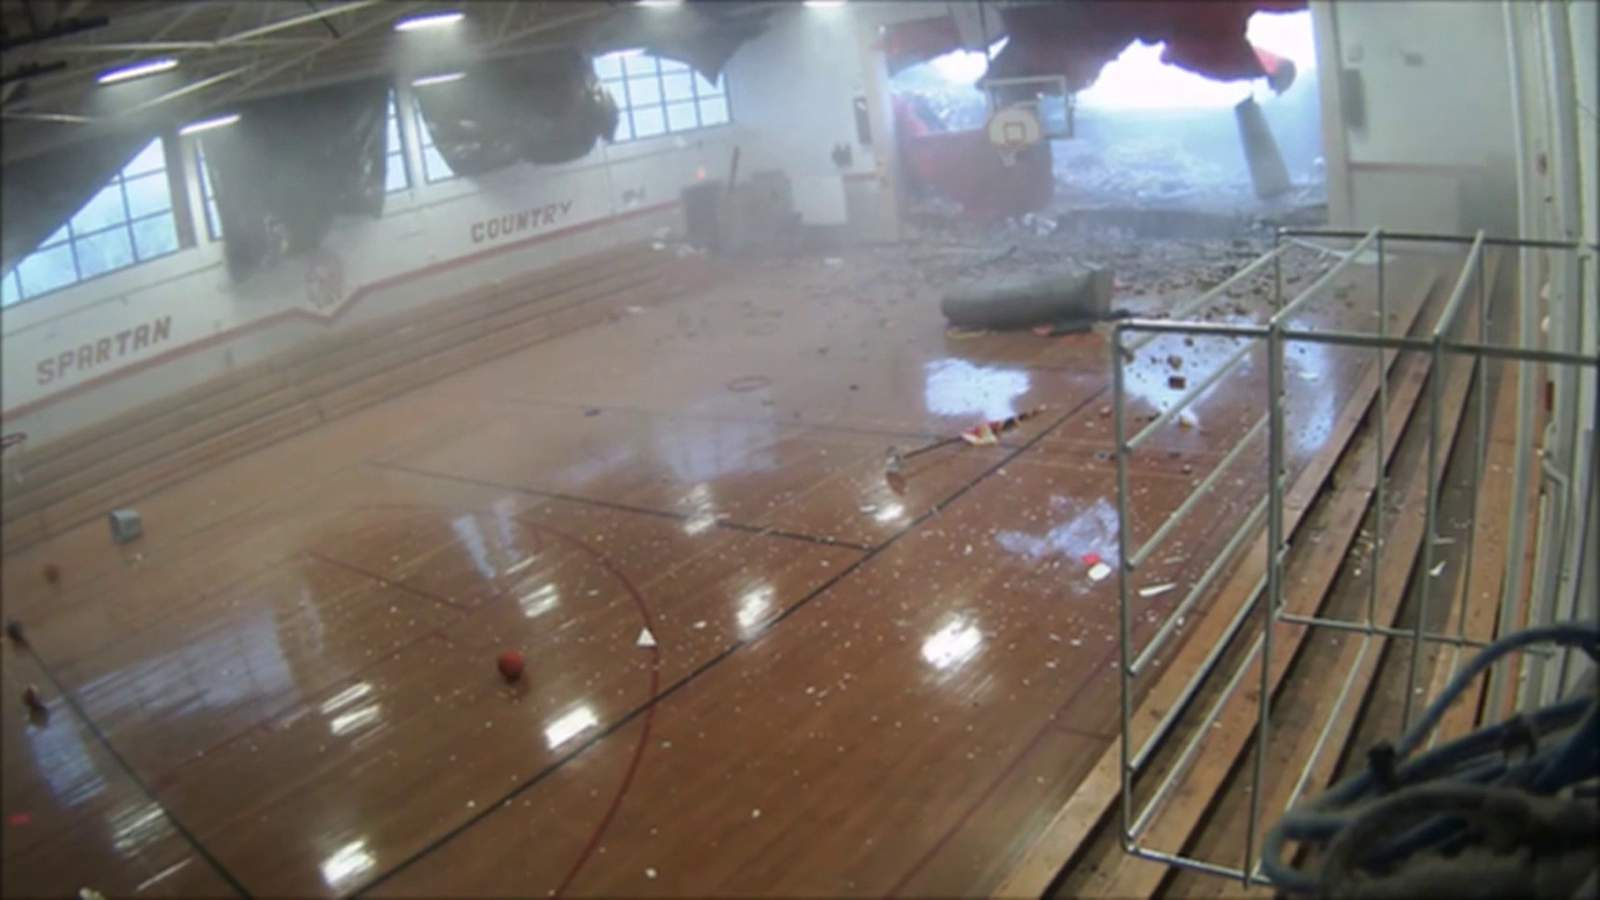 3 students injured when storms break through school gym